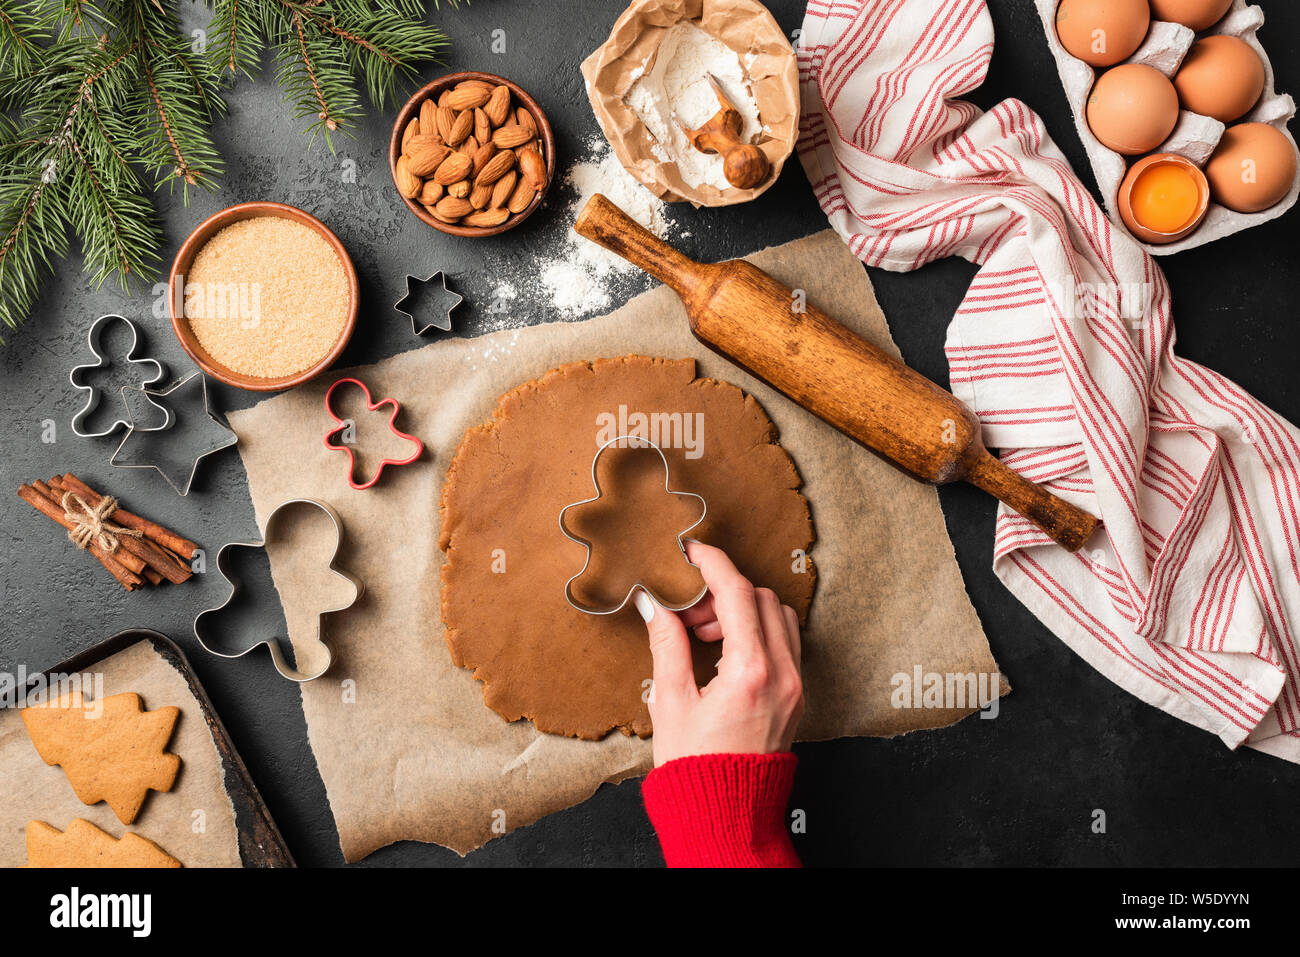 Navidad galletas de jengibre preparación sobre la tabla de pizarra negra. Mano de mujer haciendo galletas festivas con especias Foto de stock